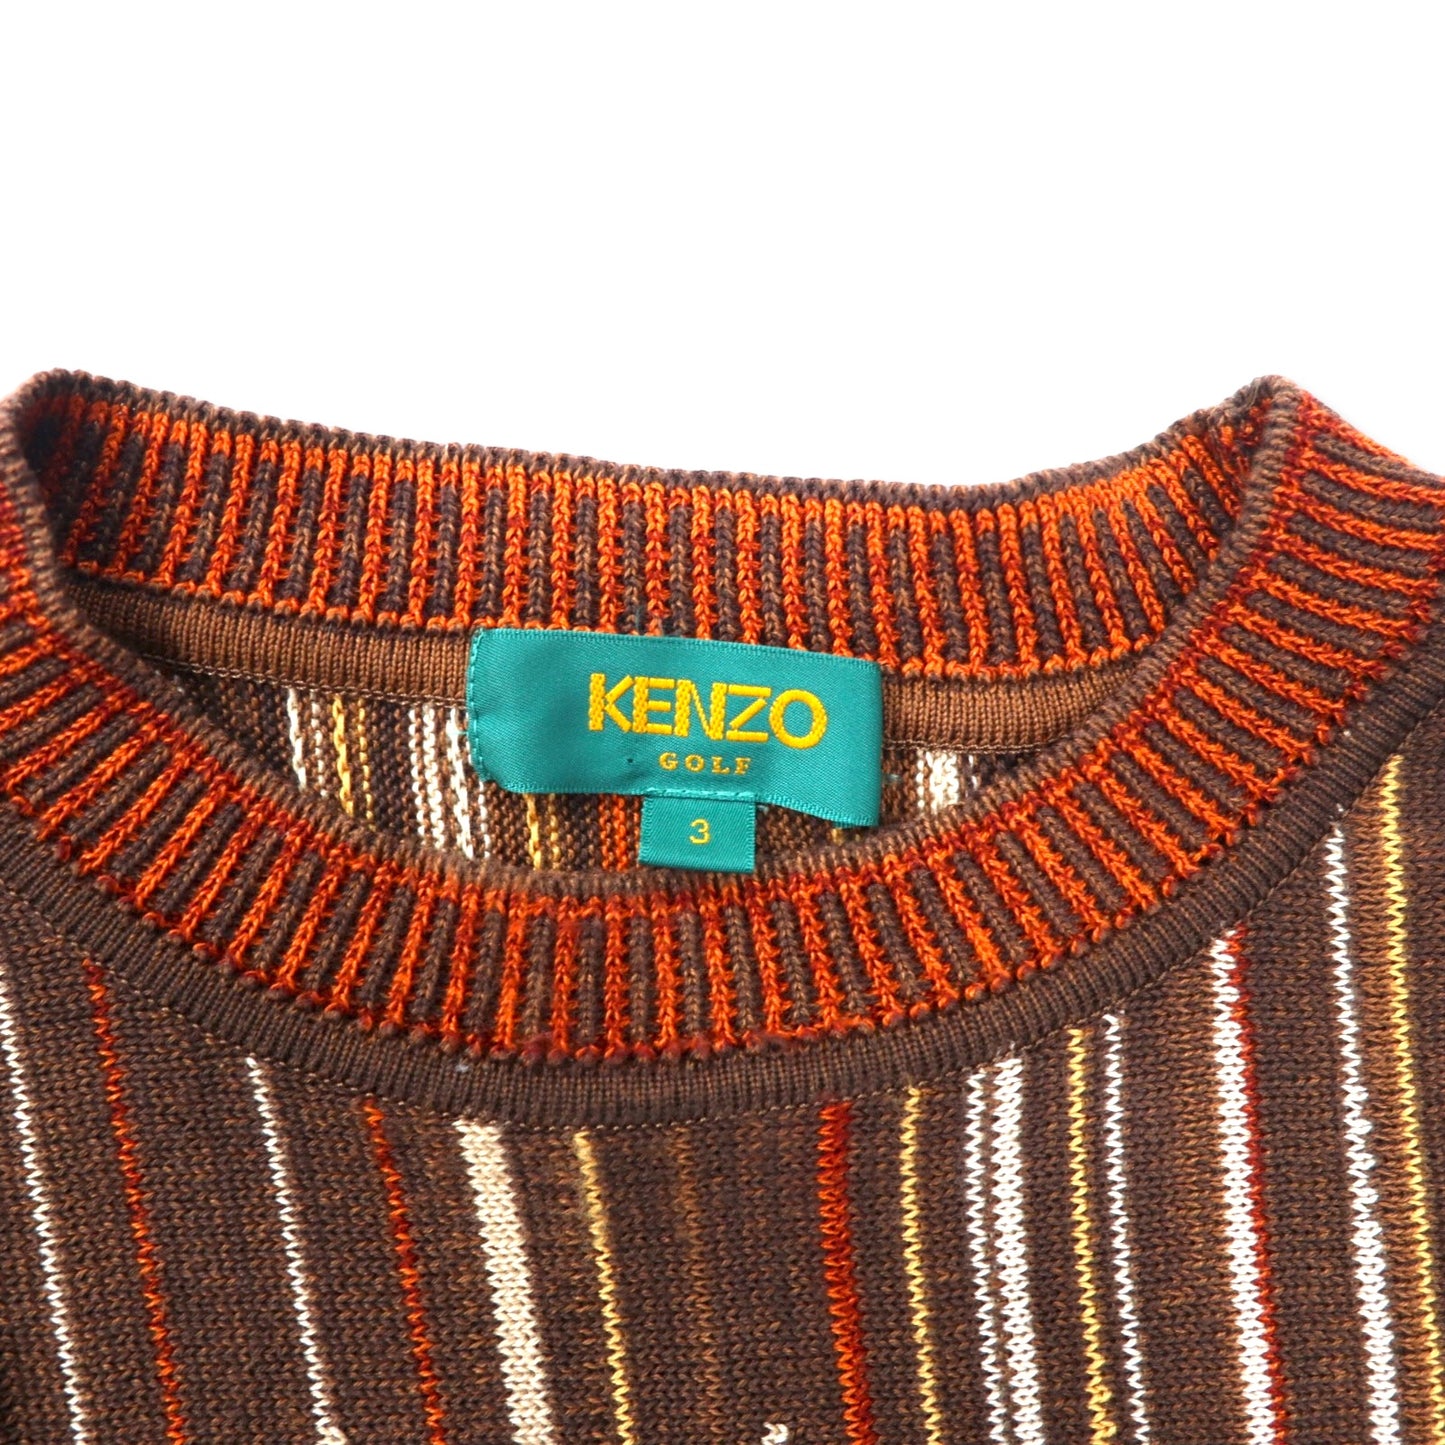 KENZO GOLF 90年代 総柄 ニット セーター 3 ブラウン コットン ワンポイントロゴ刺繍 日本製